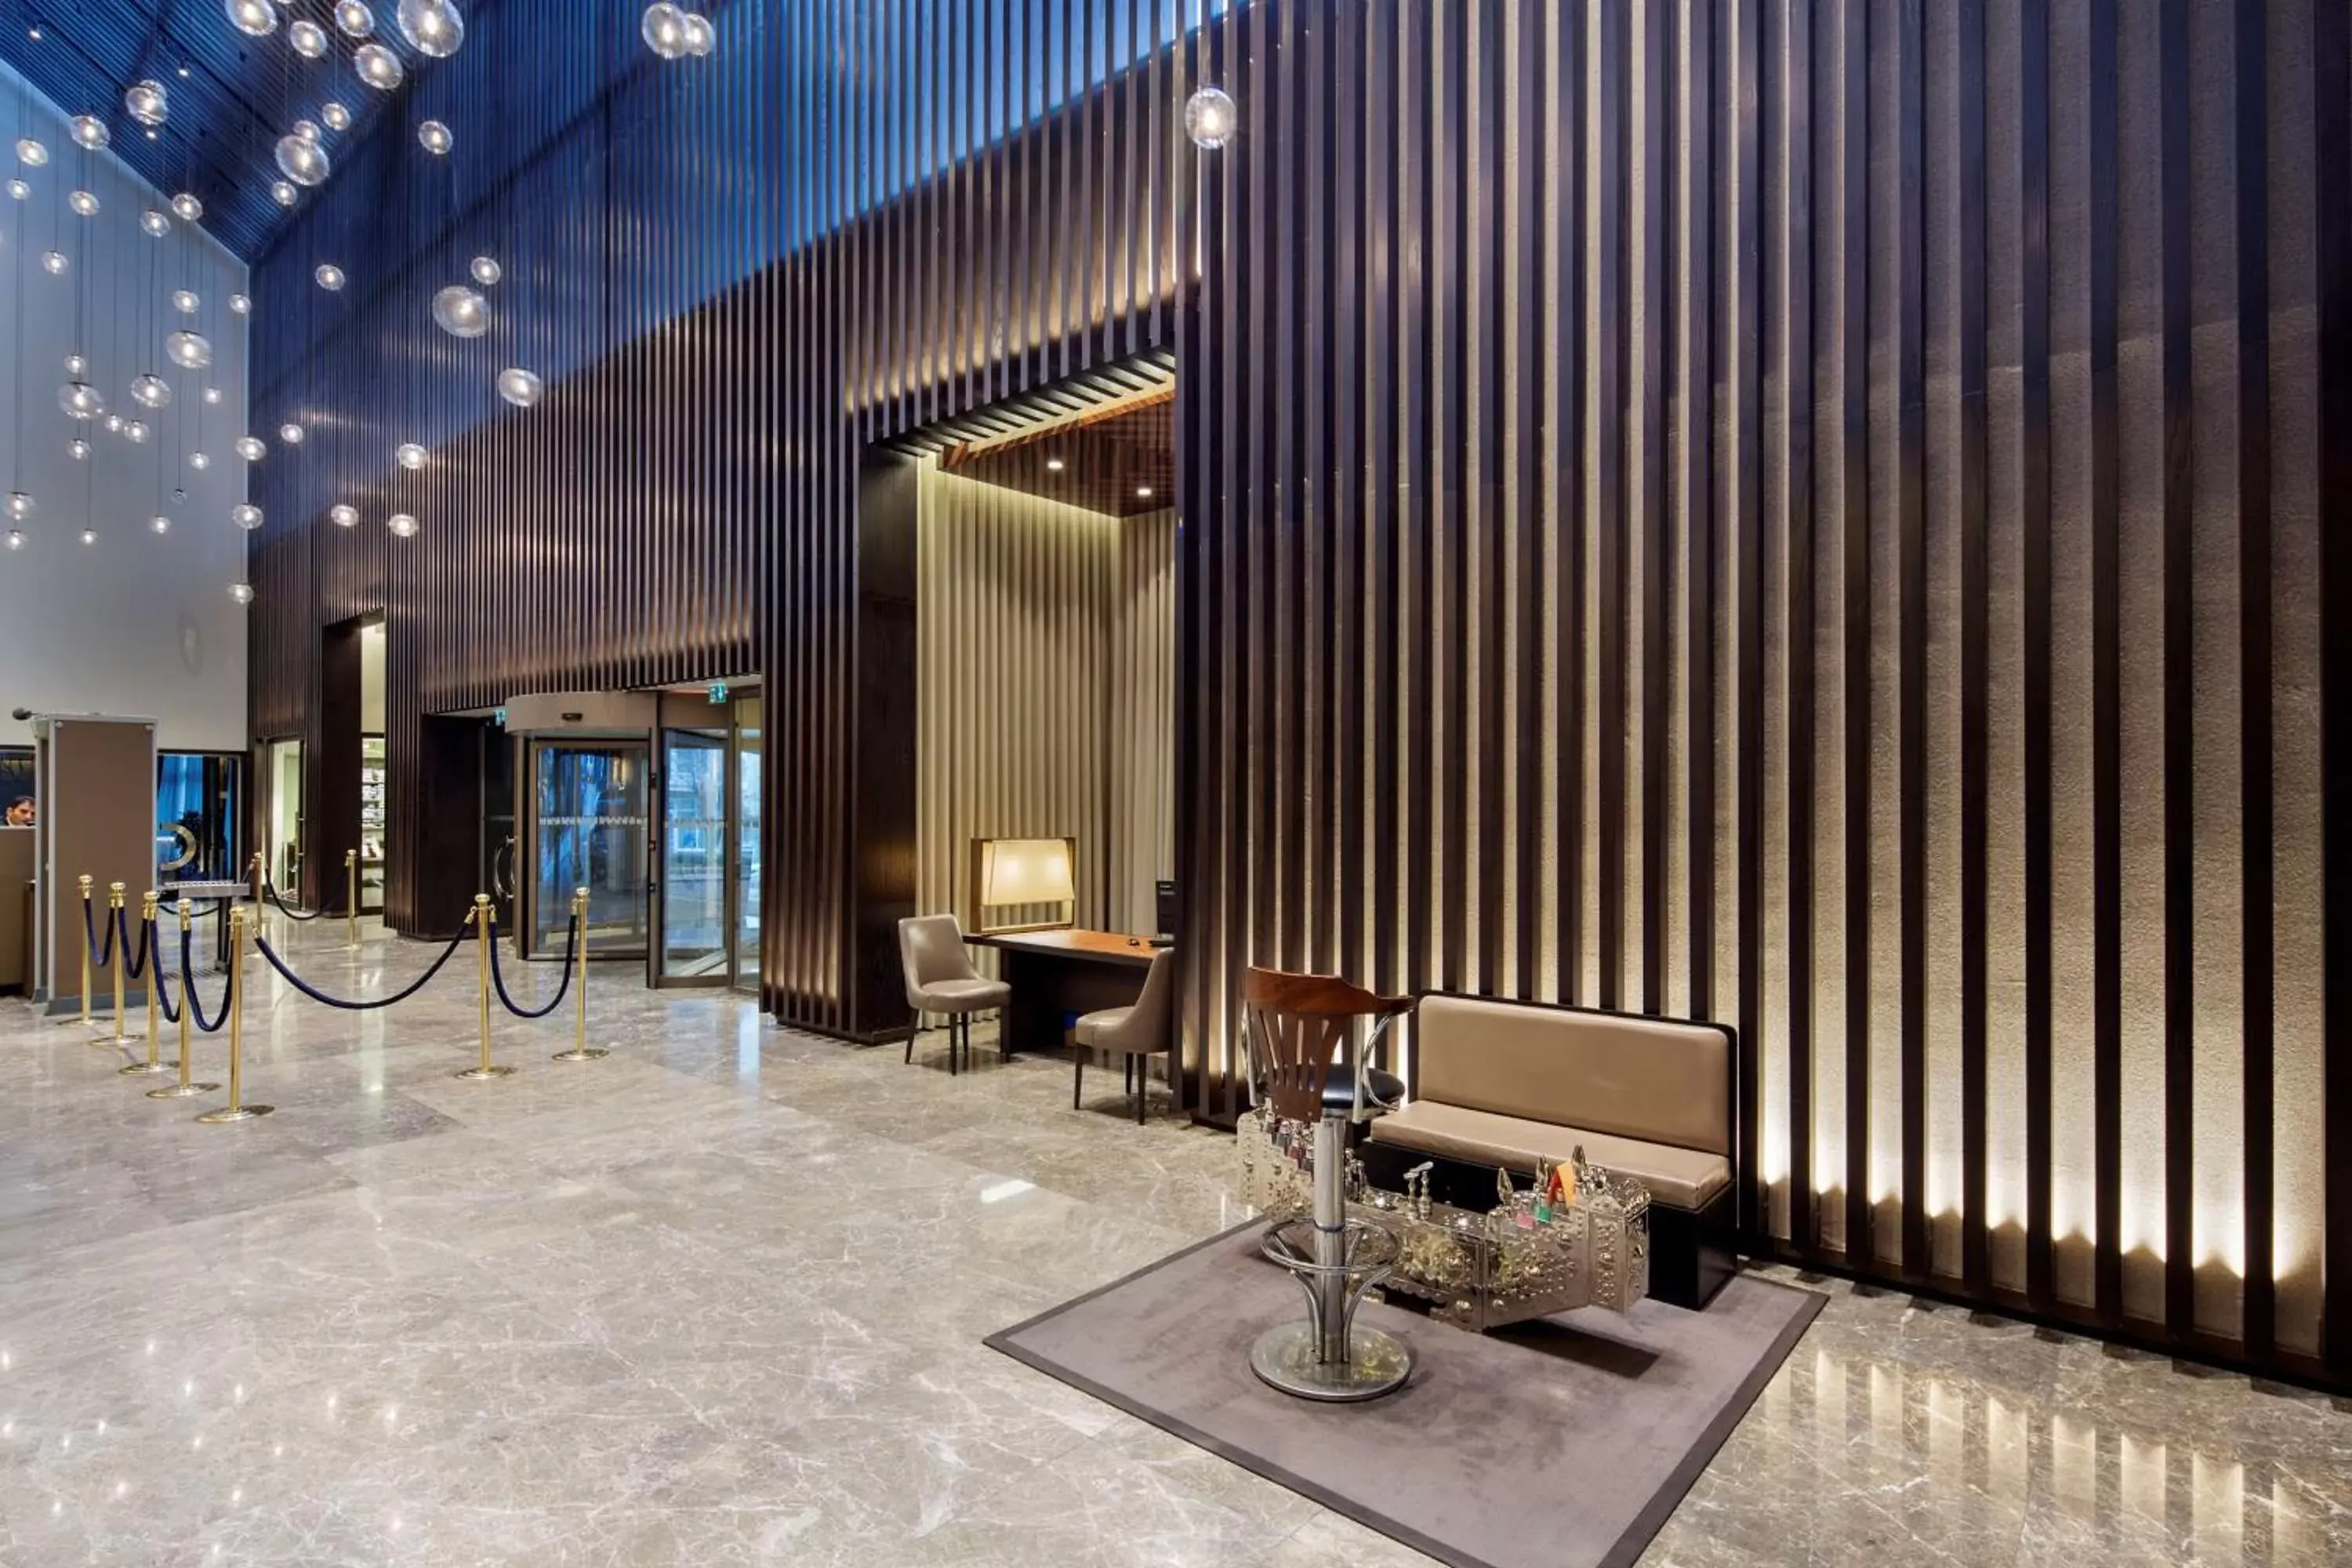 Lobby or reception in Ankara HiltonSA